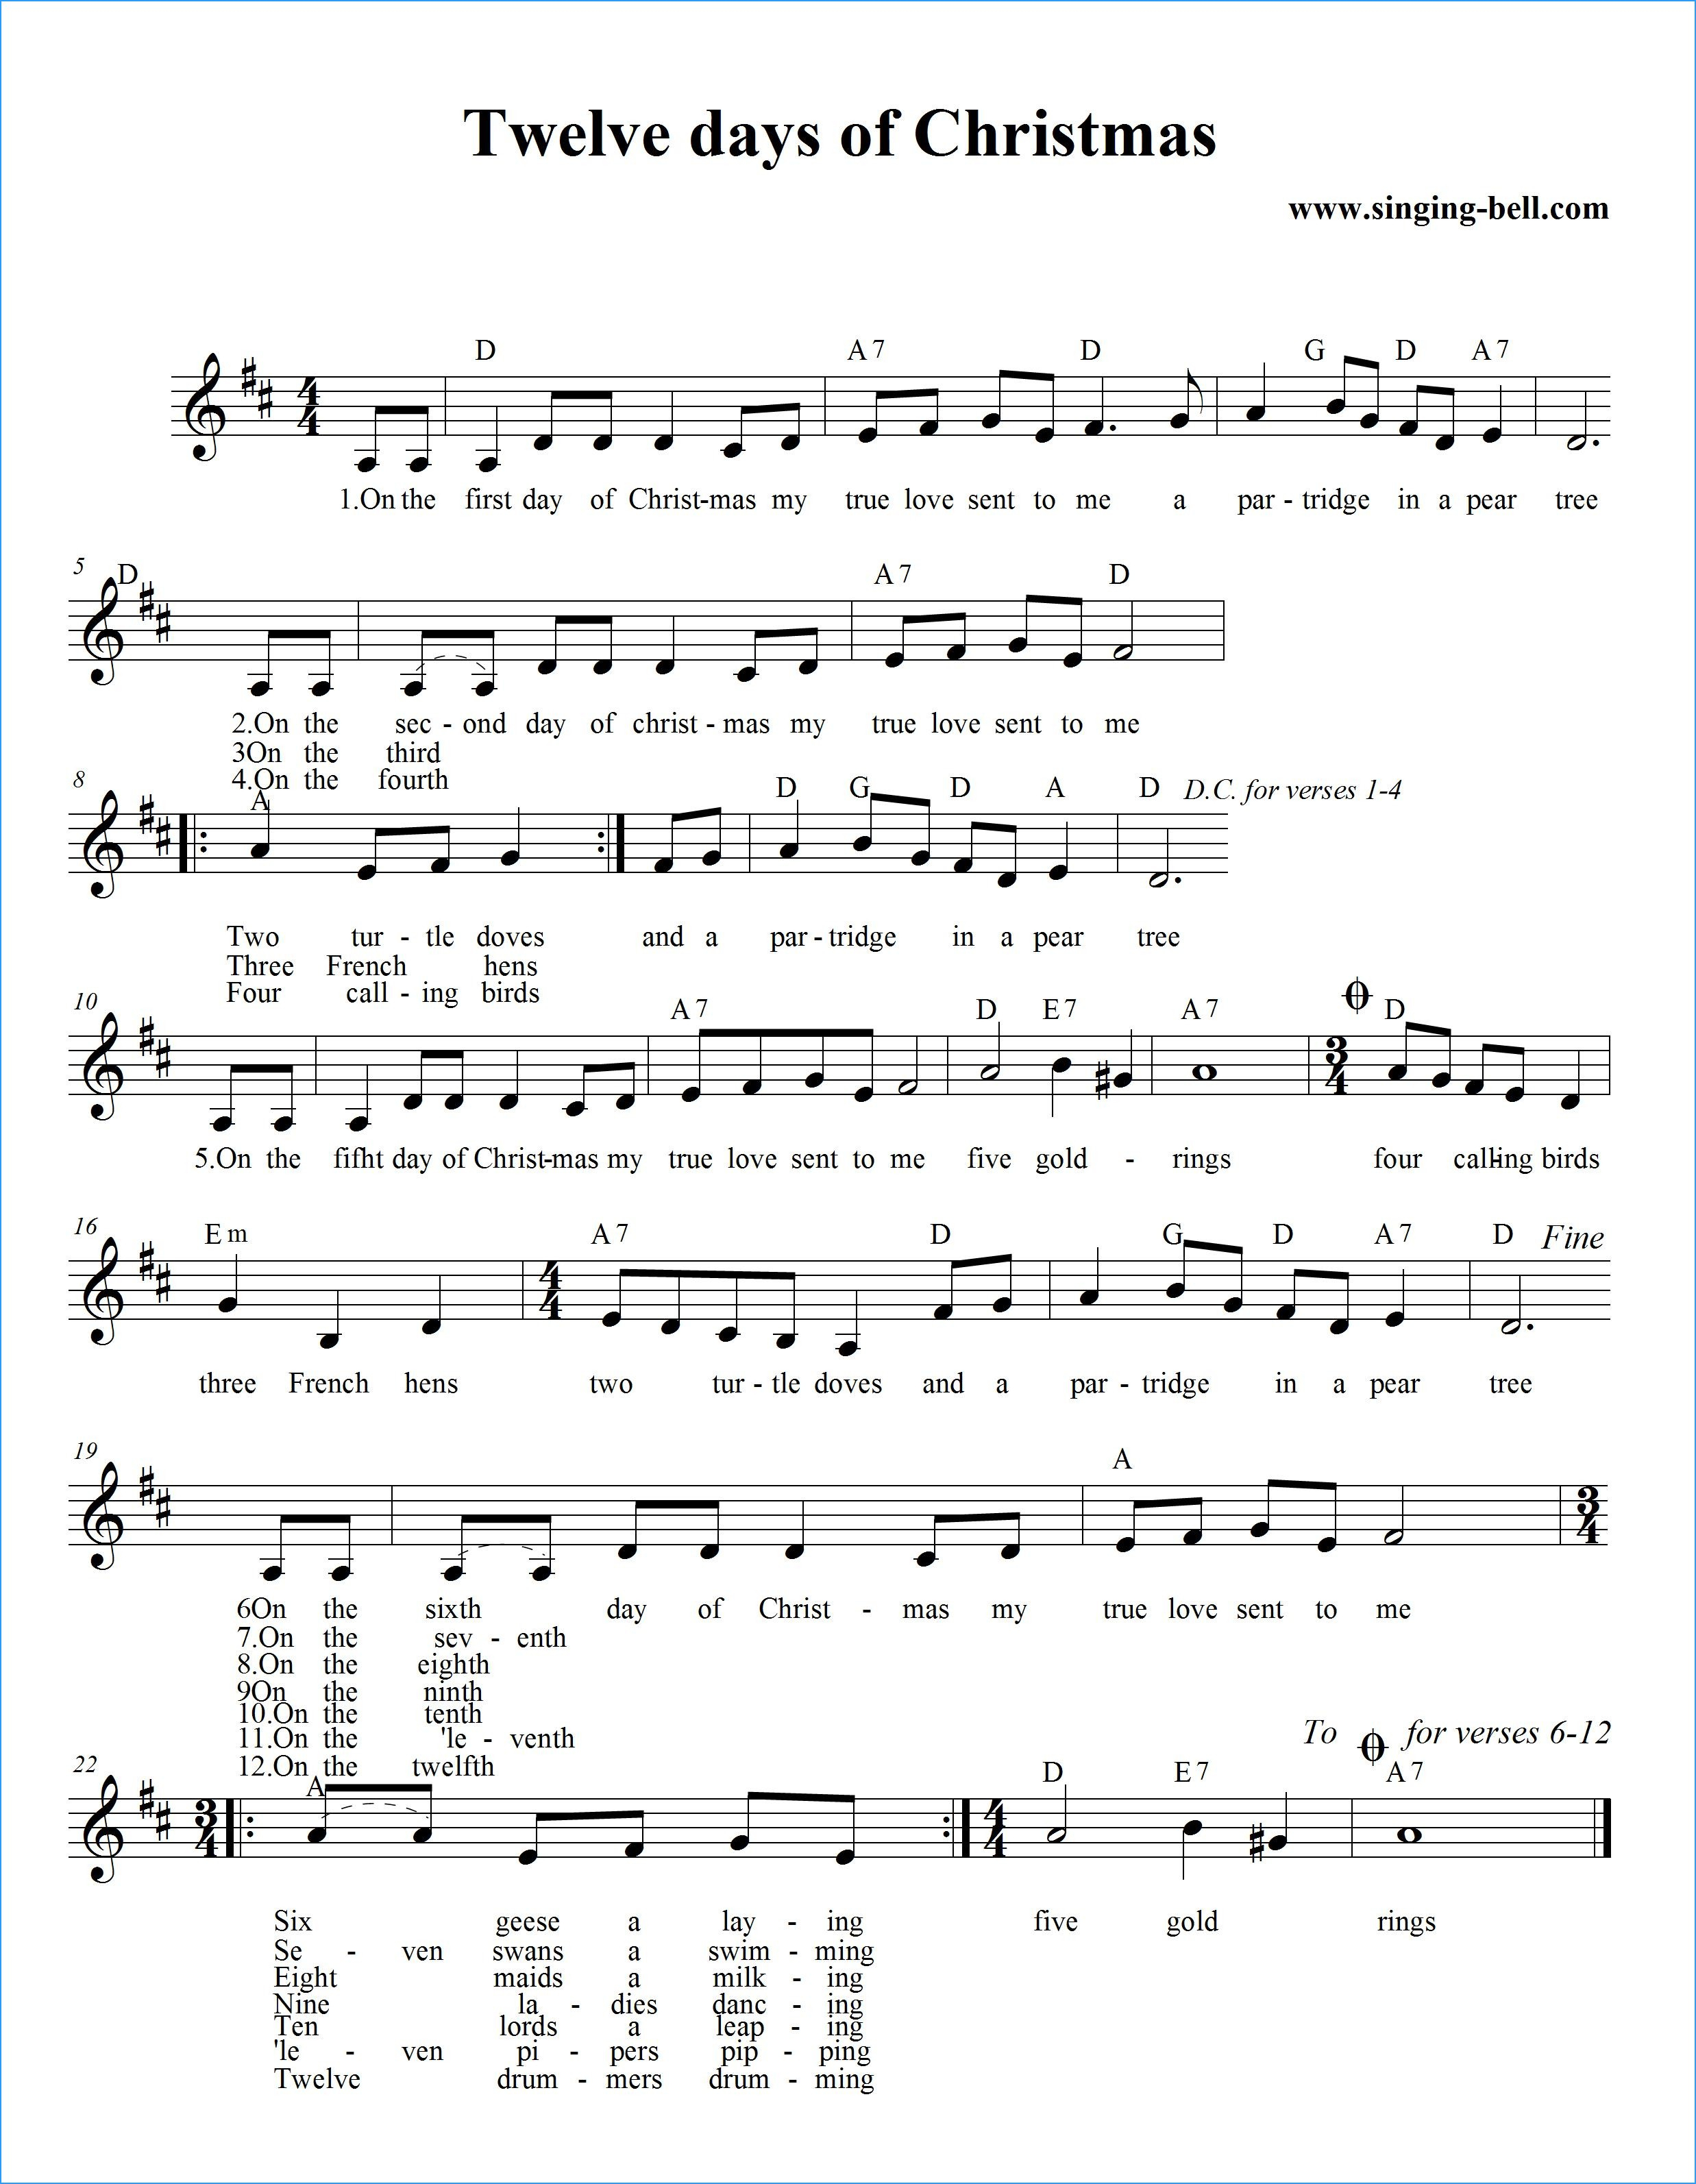 free-printable-sheet-music-lyrics-free-printable